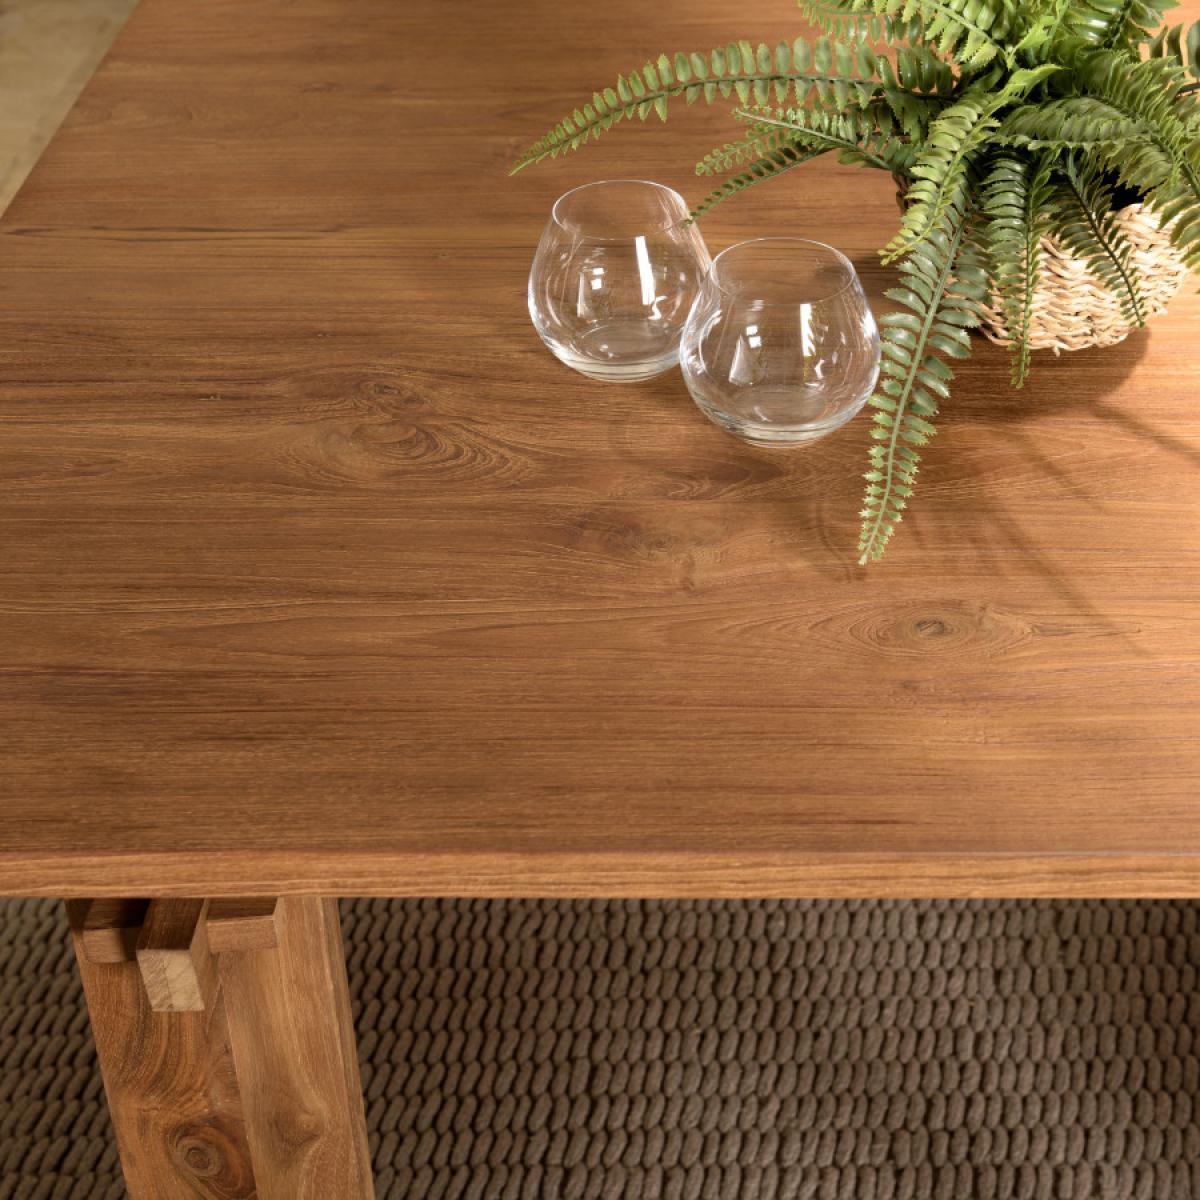 ALIDA - Table à manger rectangulaire 220x90cm en bois de teck recyclé